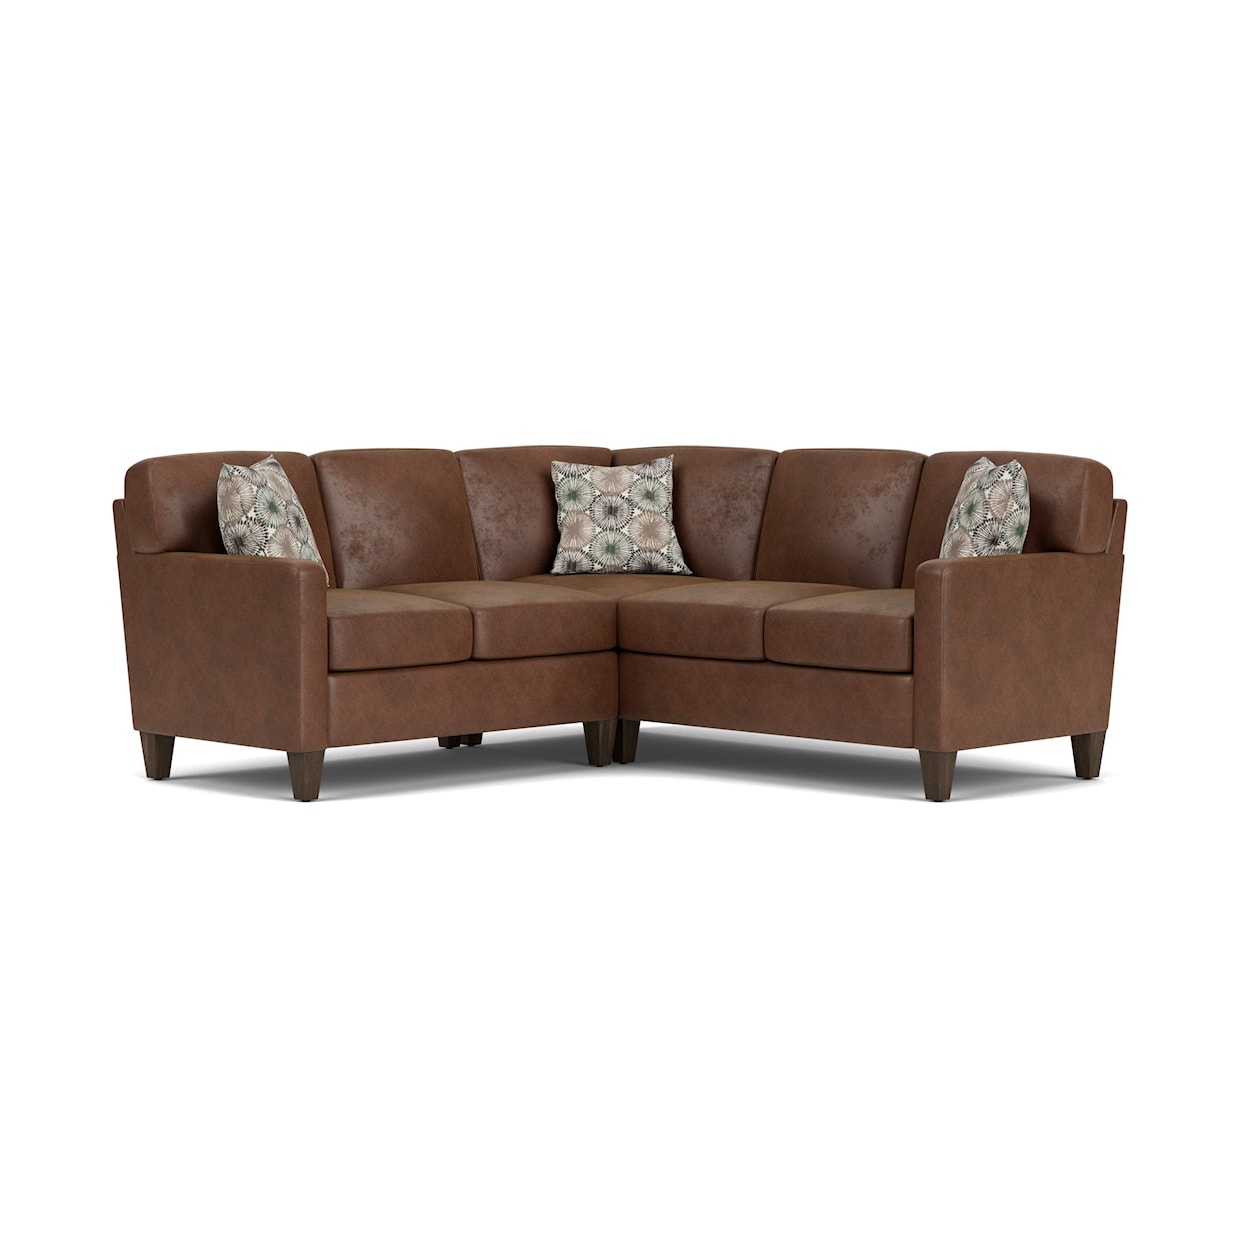 Flexsteel Moxy Sectional Sofa